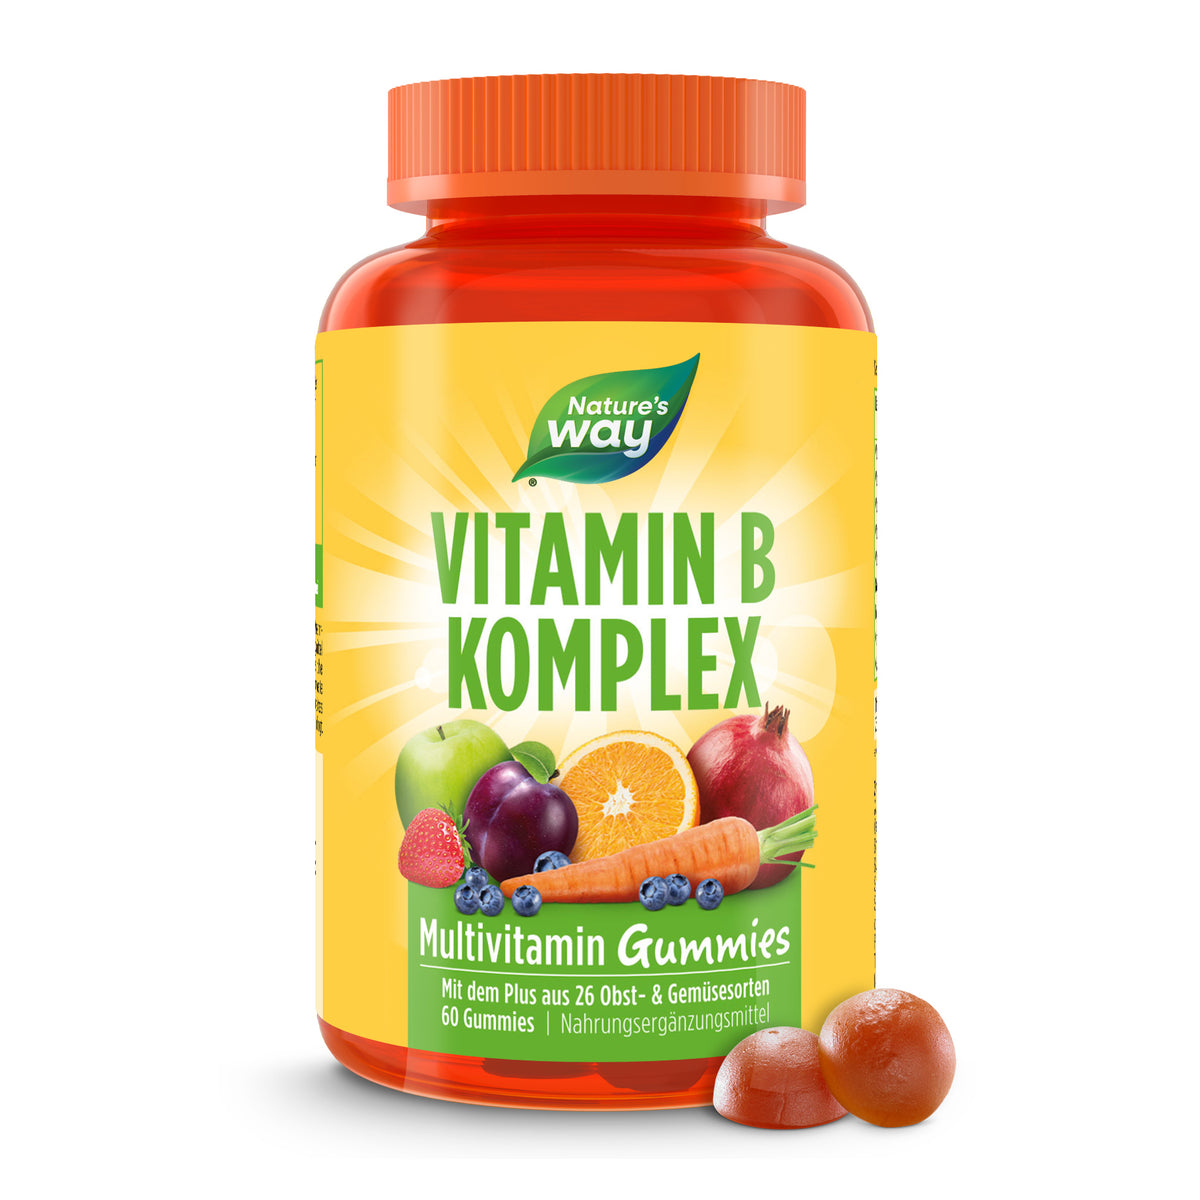 Vitamin B Komplex Multivitamin Gummies